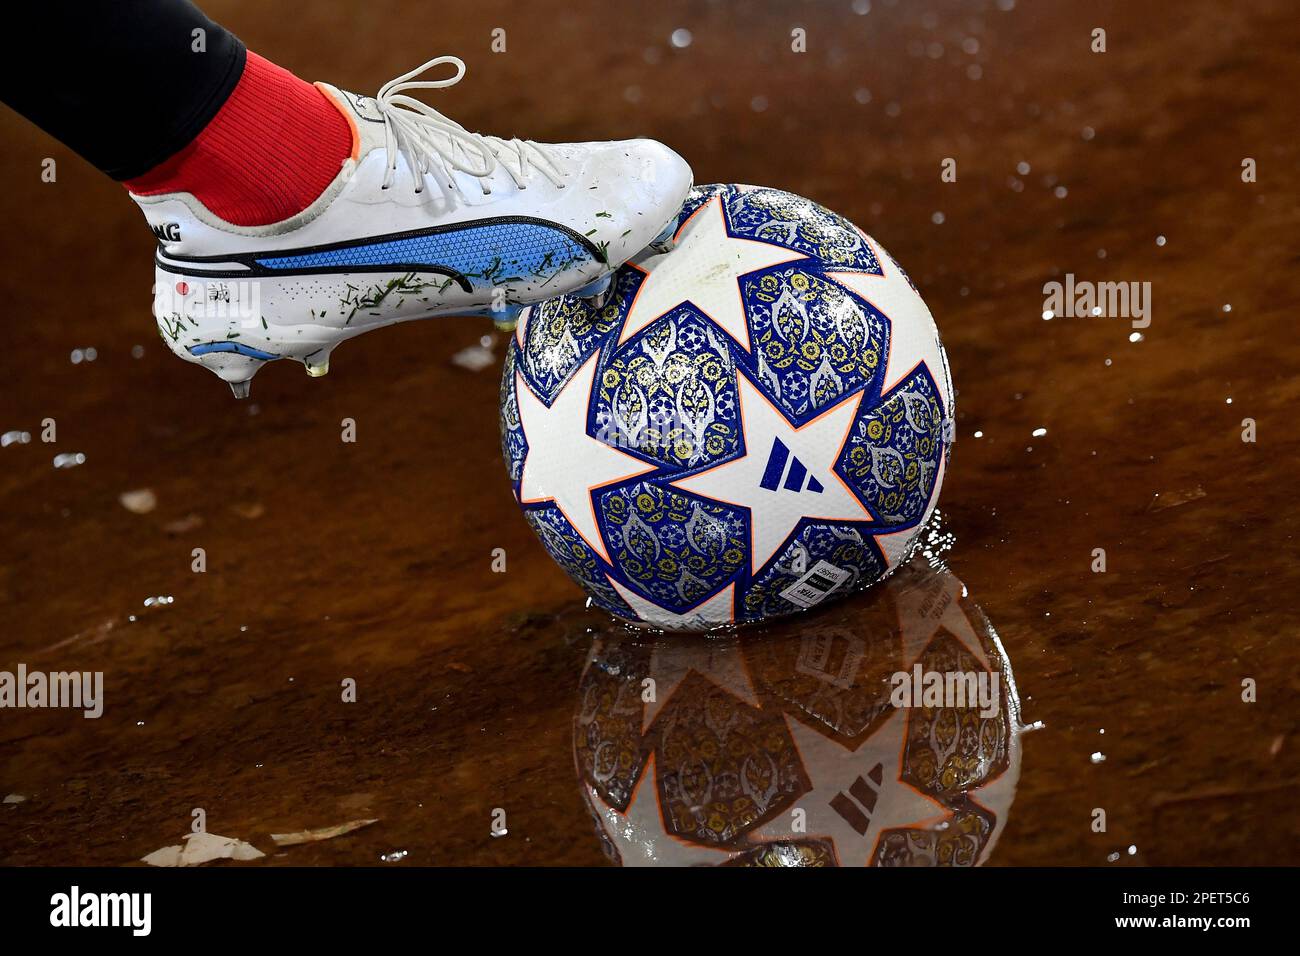 Un allenatore con scarpe Nike recupera la palla adidas dall'acqua durante la partita di calcio della Champions League tra SSC Napoli e Eintracht Frankfurt Foto Stock